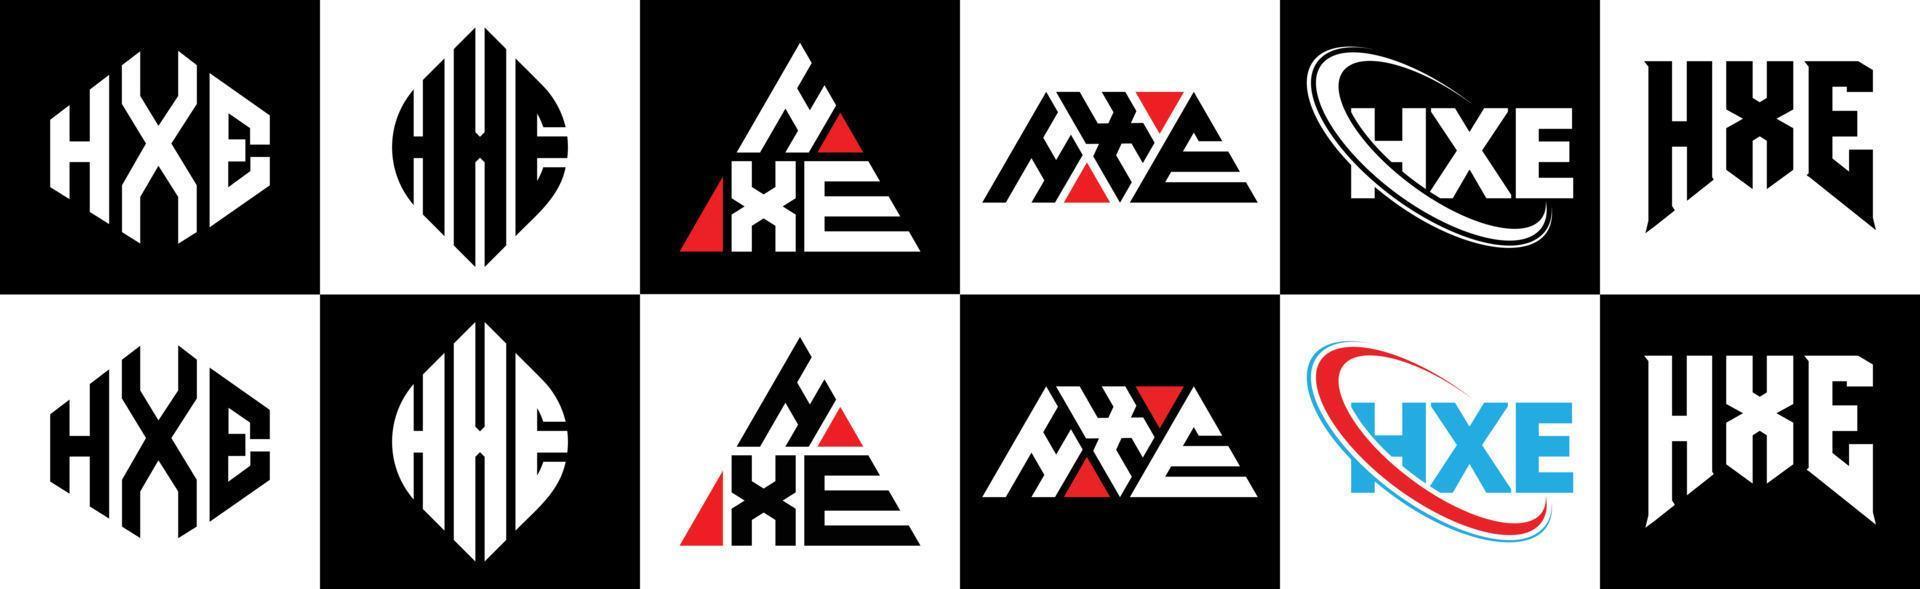 création de logo de lettre hxe en six styles. hxe polygone, cercle, triangle, hexagone, style plat et simple avec logo de lettre de variation de couleur noir et blanc dans un plan de travail. hxe logo minimaliste et classique vecteur